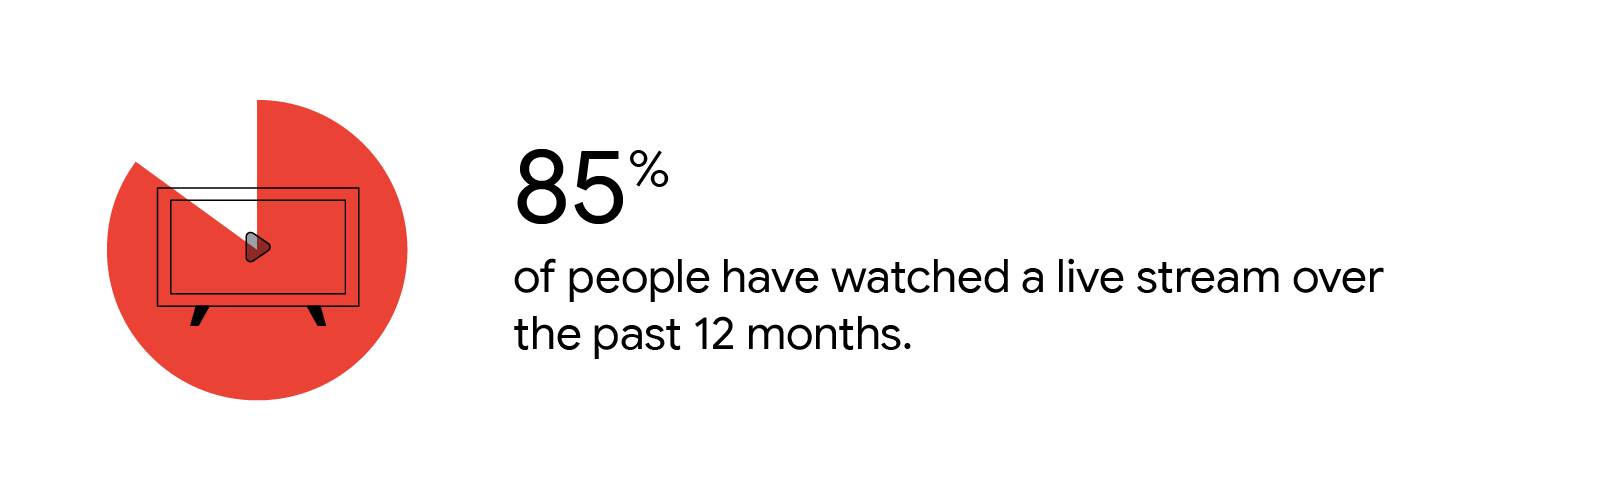 Một TV được kết nối phát sóng thống kê: 85% mọi người đã xem một sự kiện trực tiếp trong 12 tháng qua.